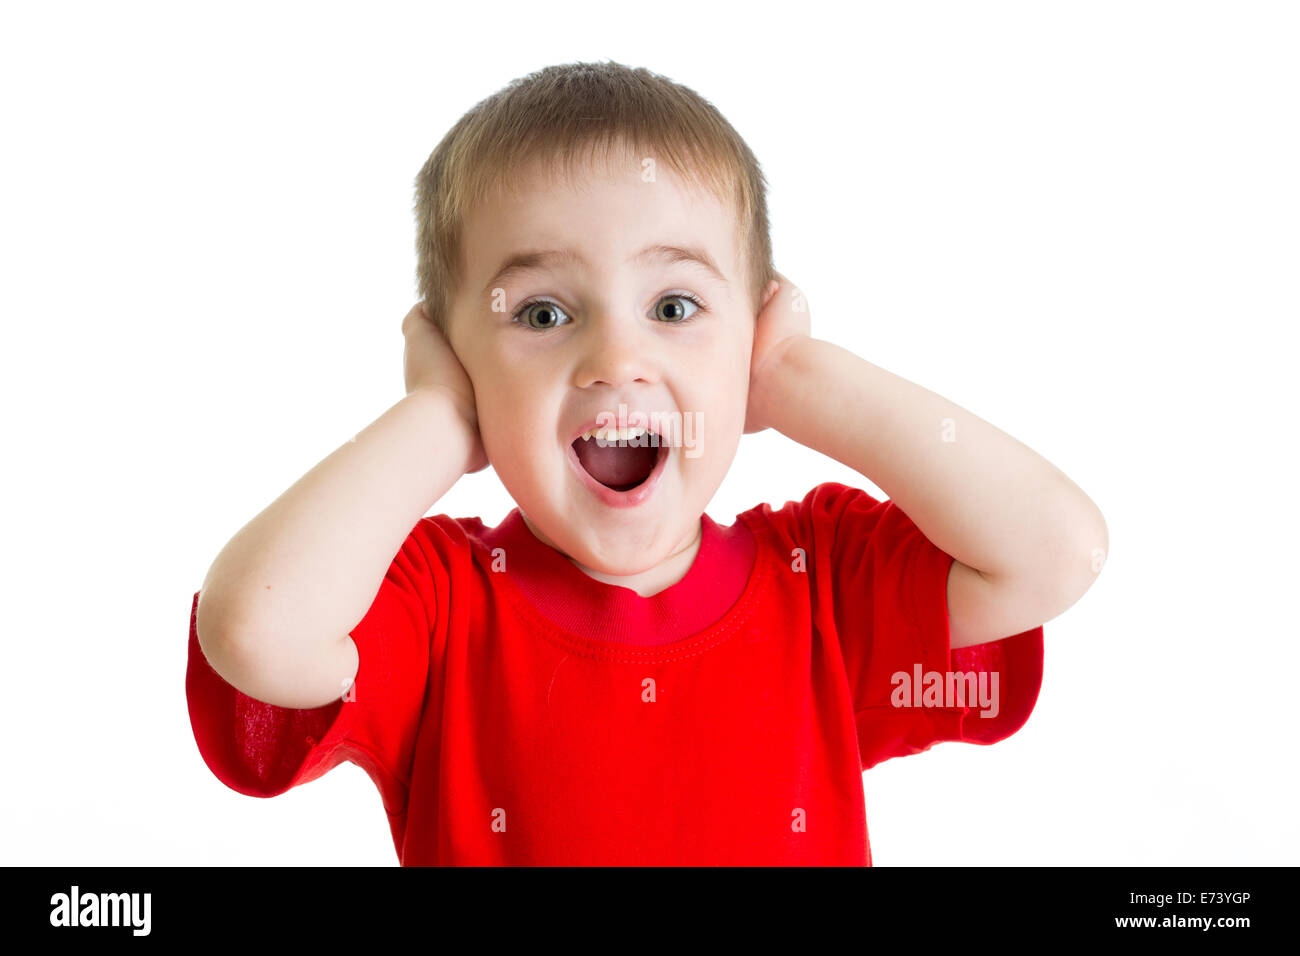 Surpris petit garçon portrait en tee-shirt rouge isolé Banque D'Images